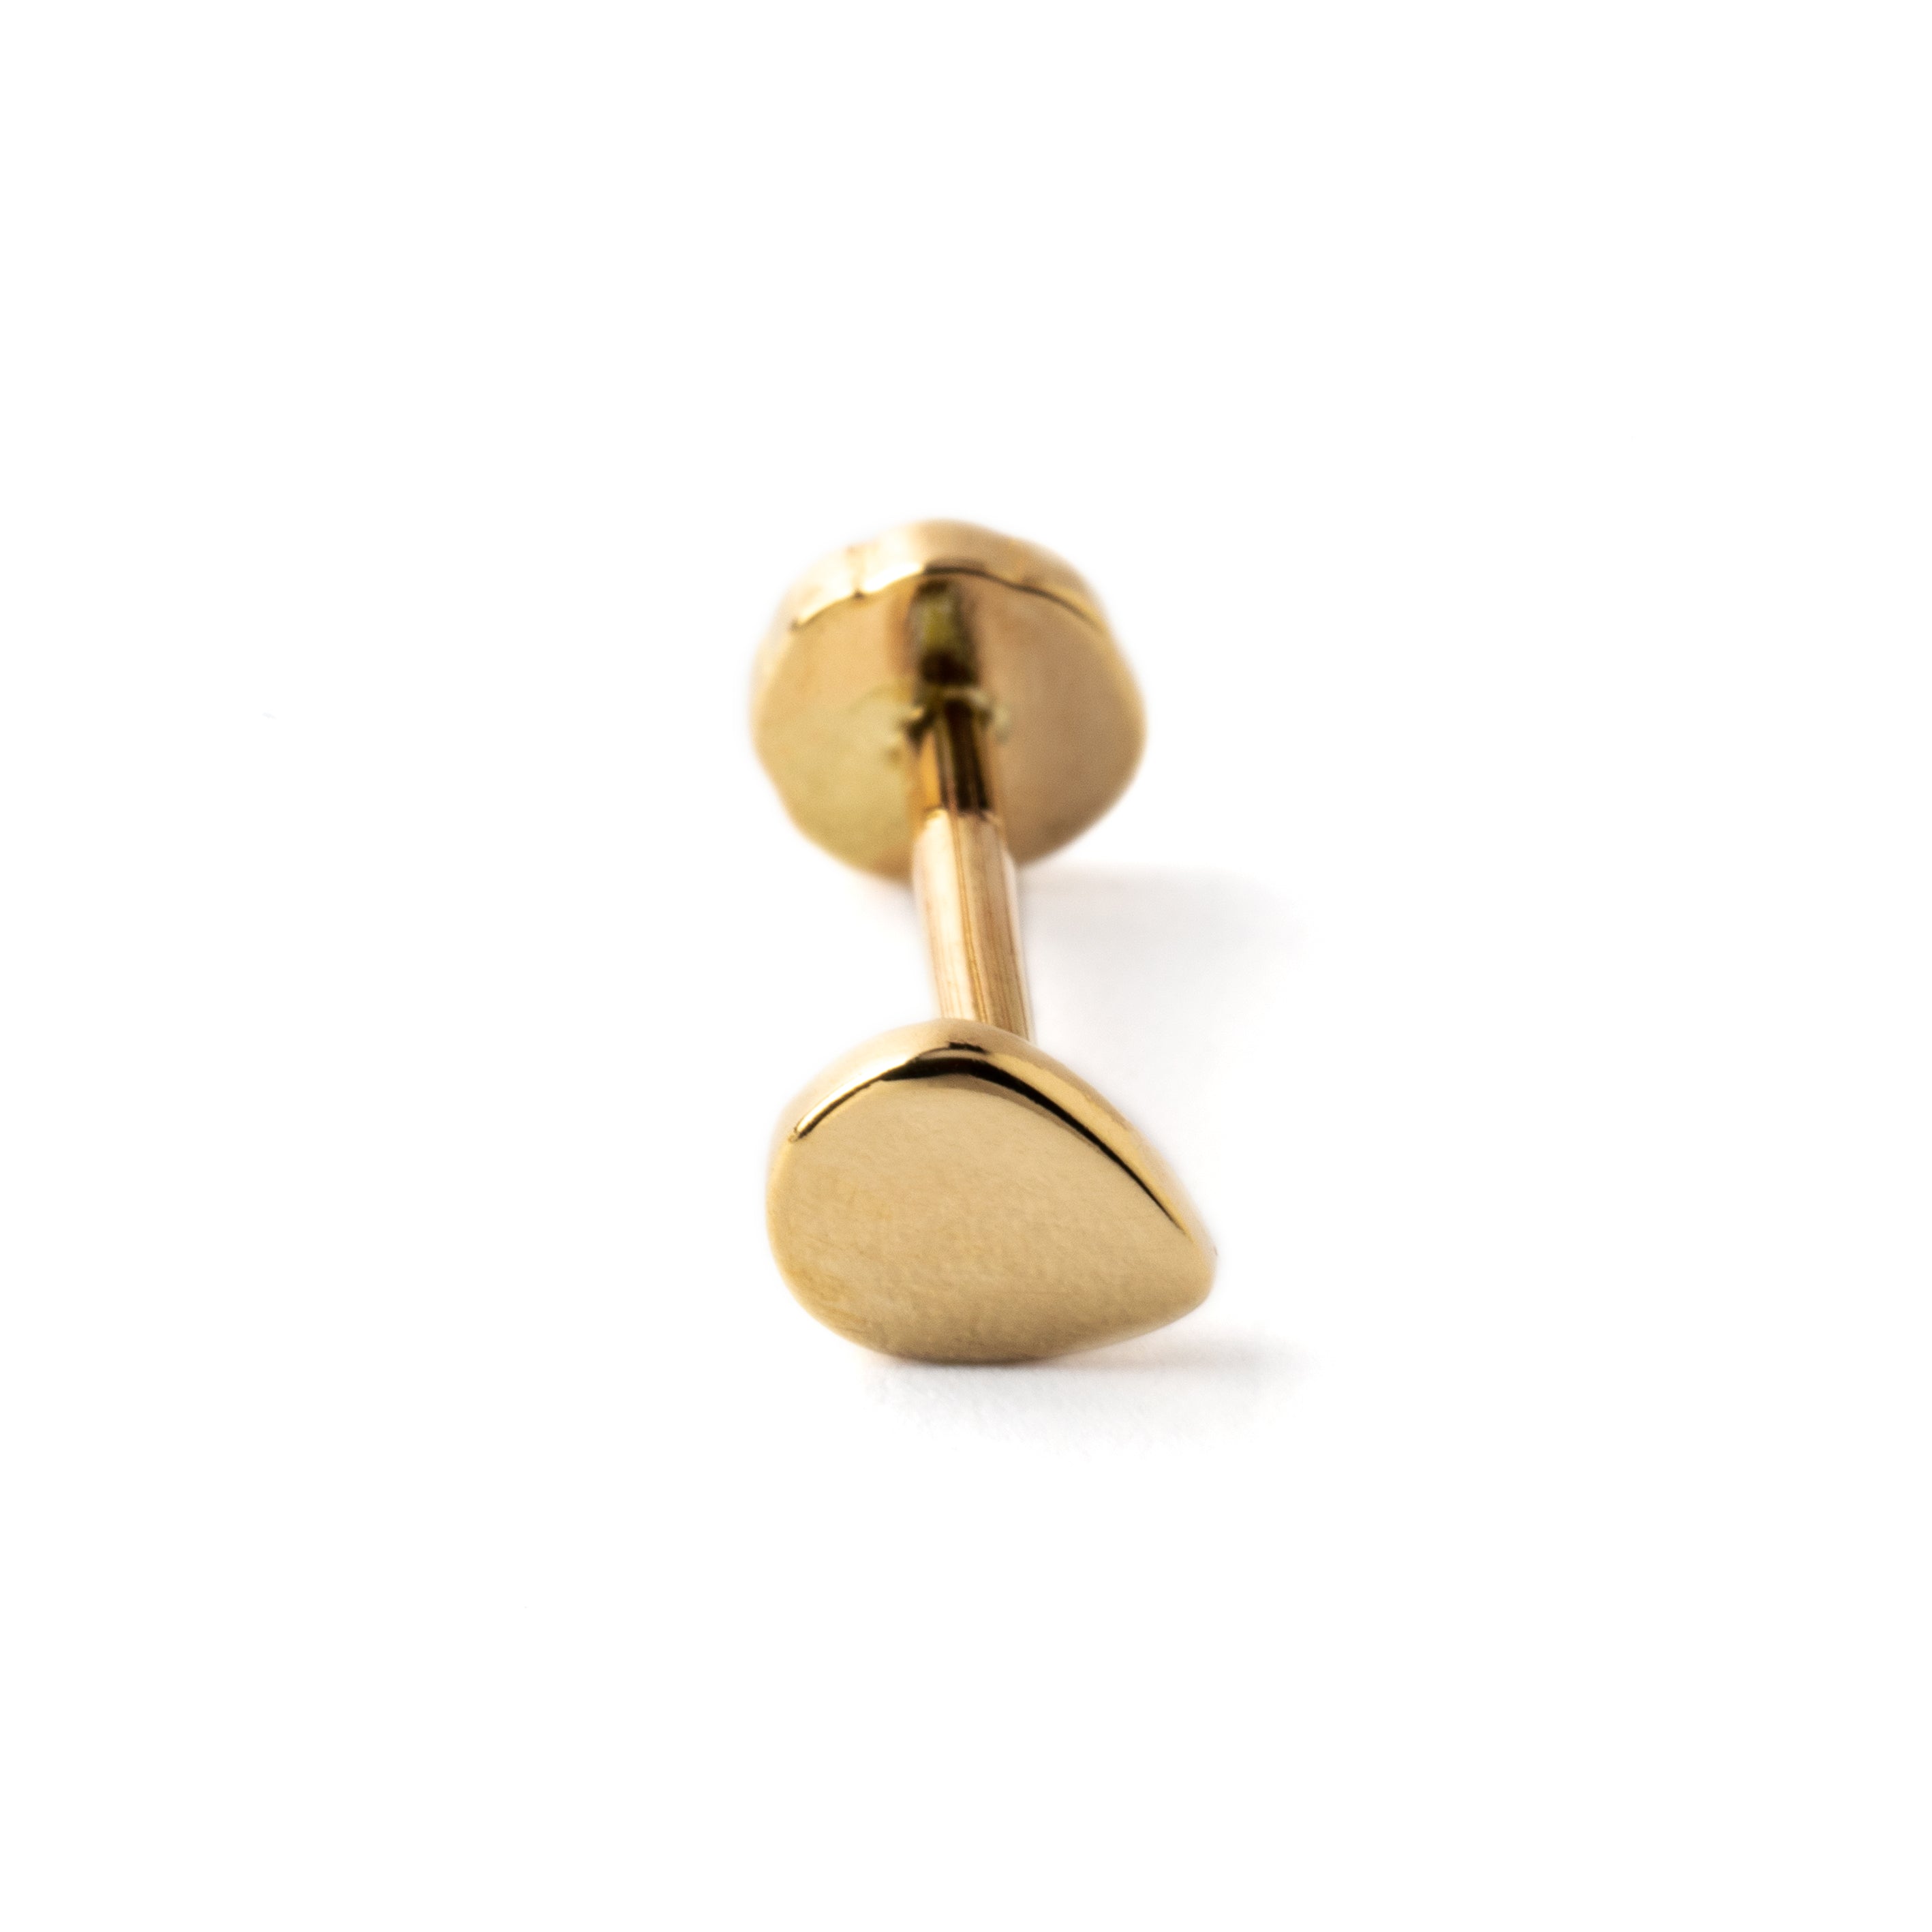 14k Gold internally threaded screw back earring 1.2mm (16g), 8mm, teardrop labret stud frontal view